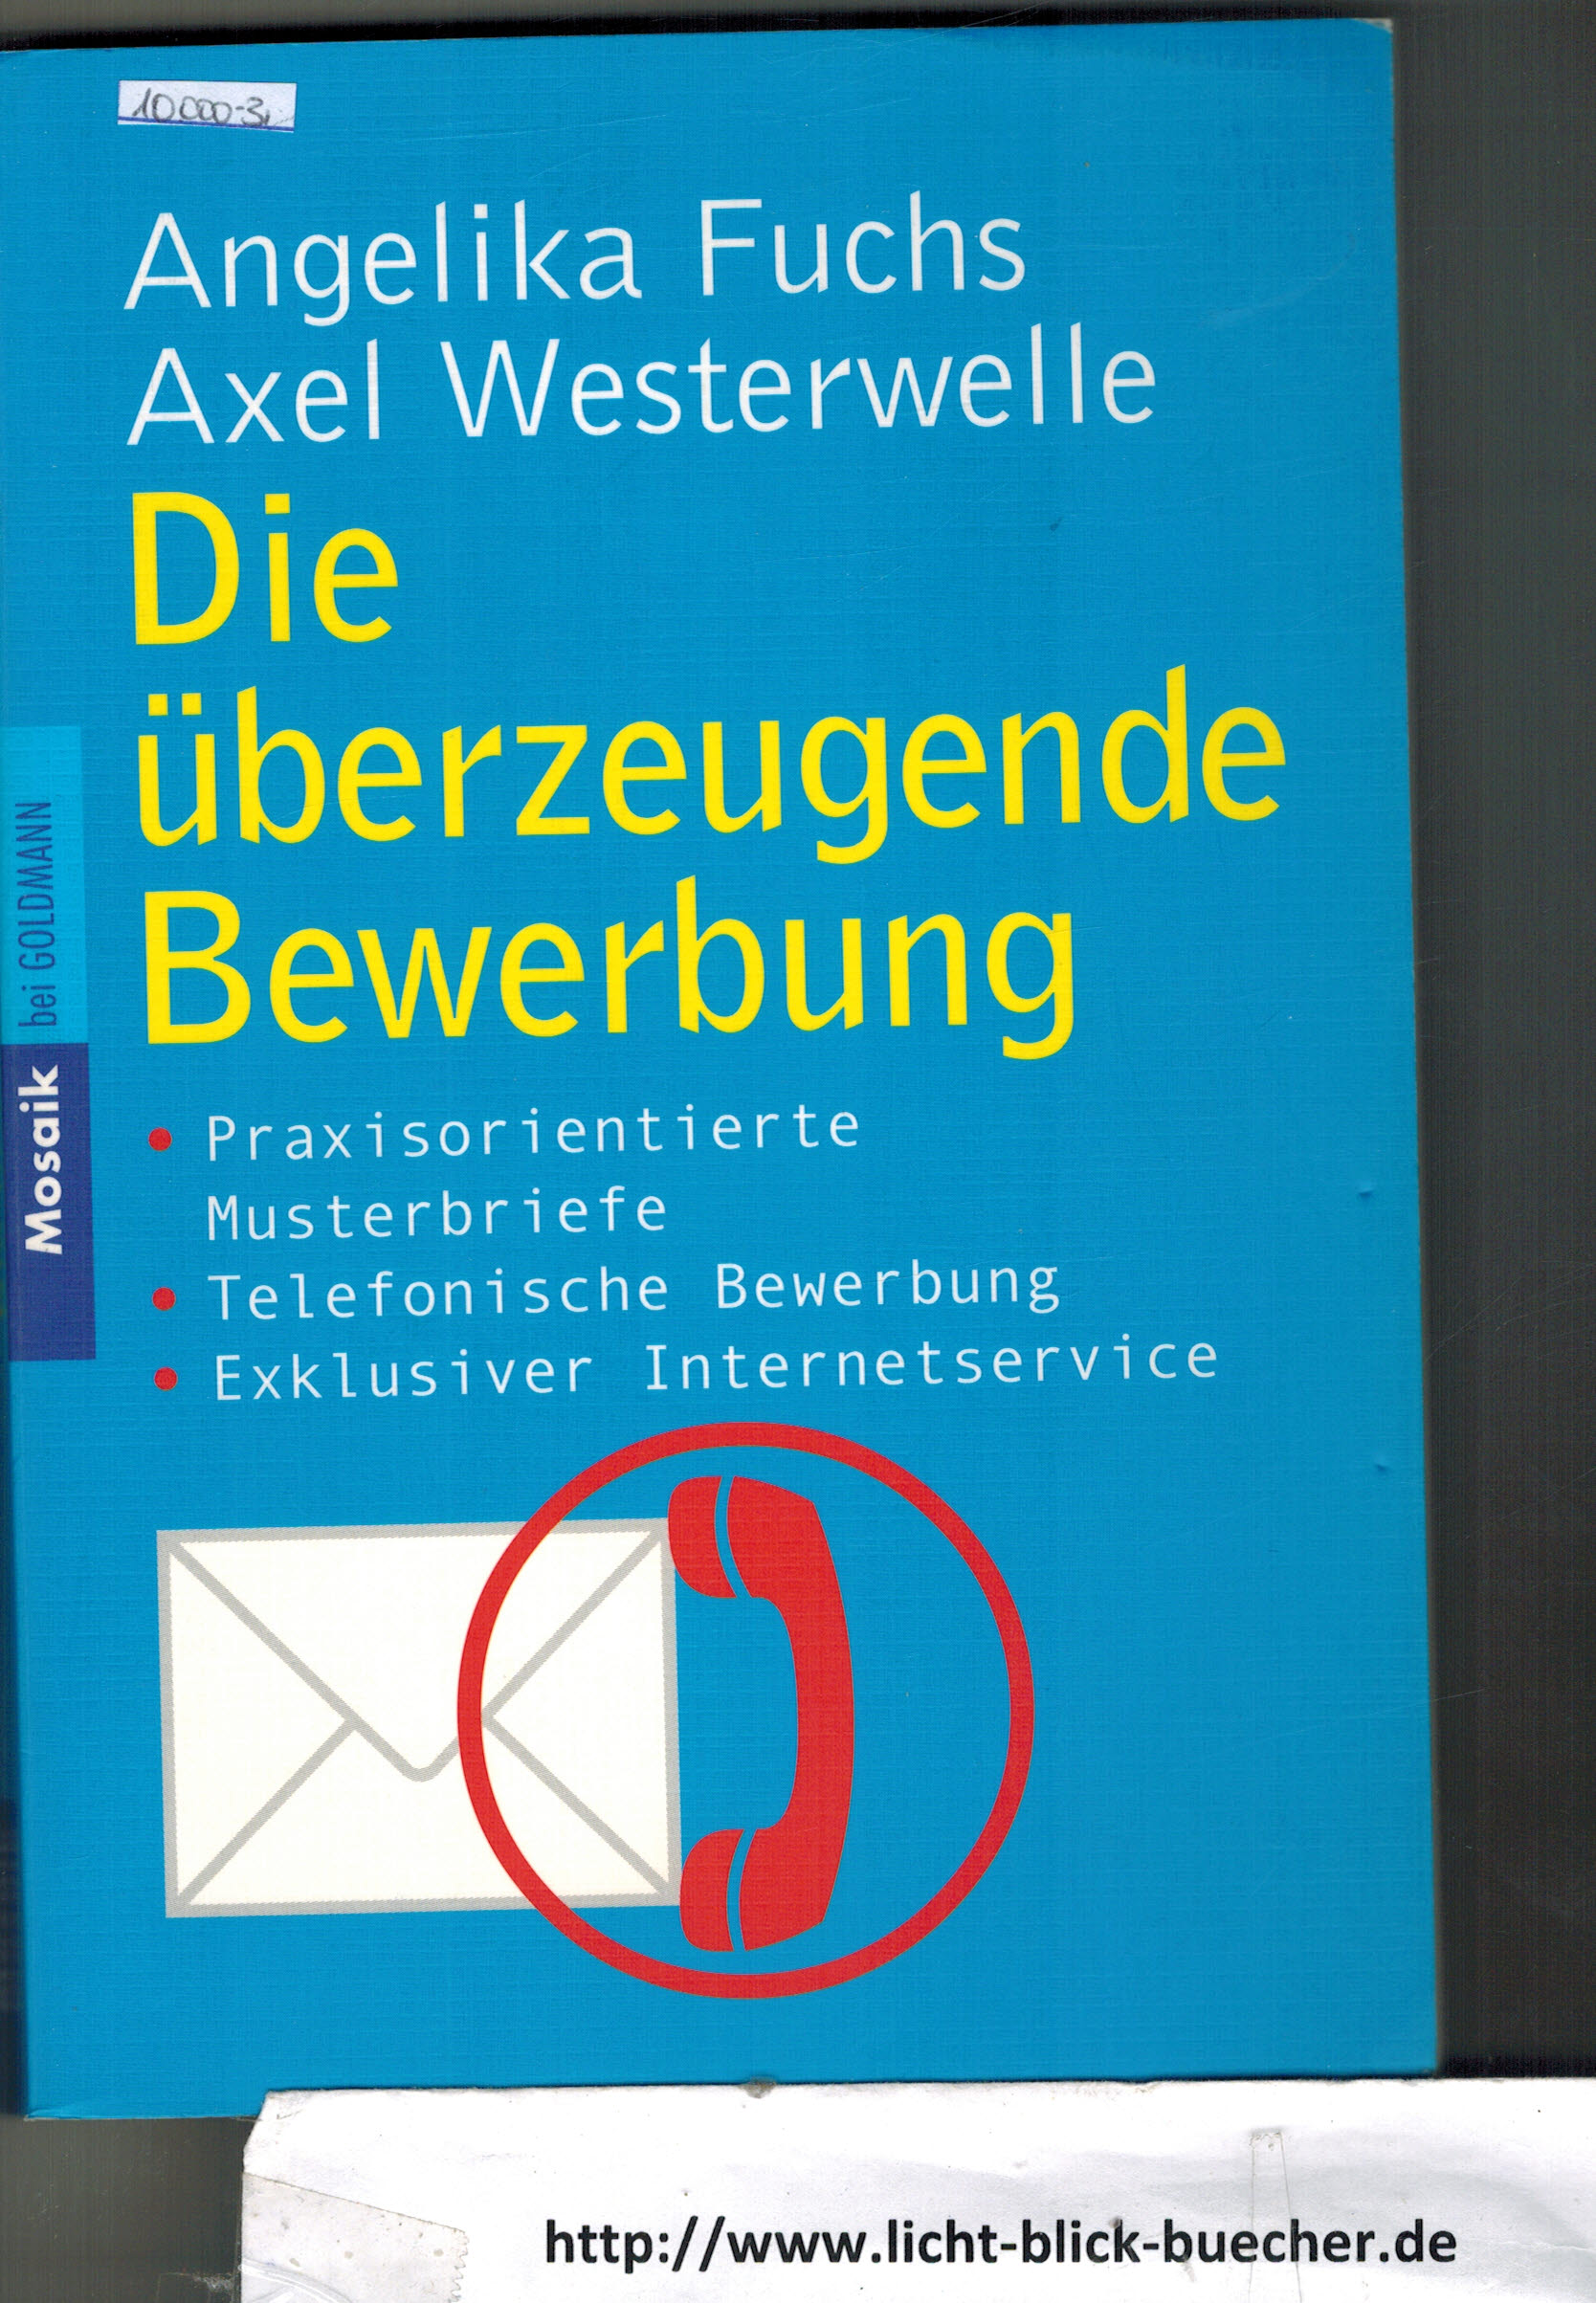 Die ueberzeugende BewerbungAngelika Fuchs / Axel Westerwelle